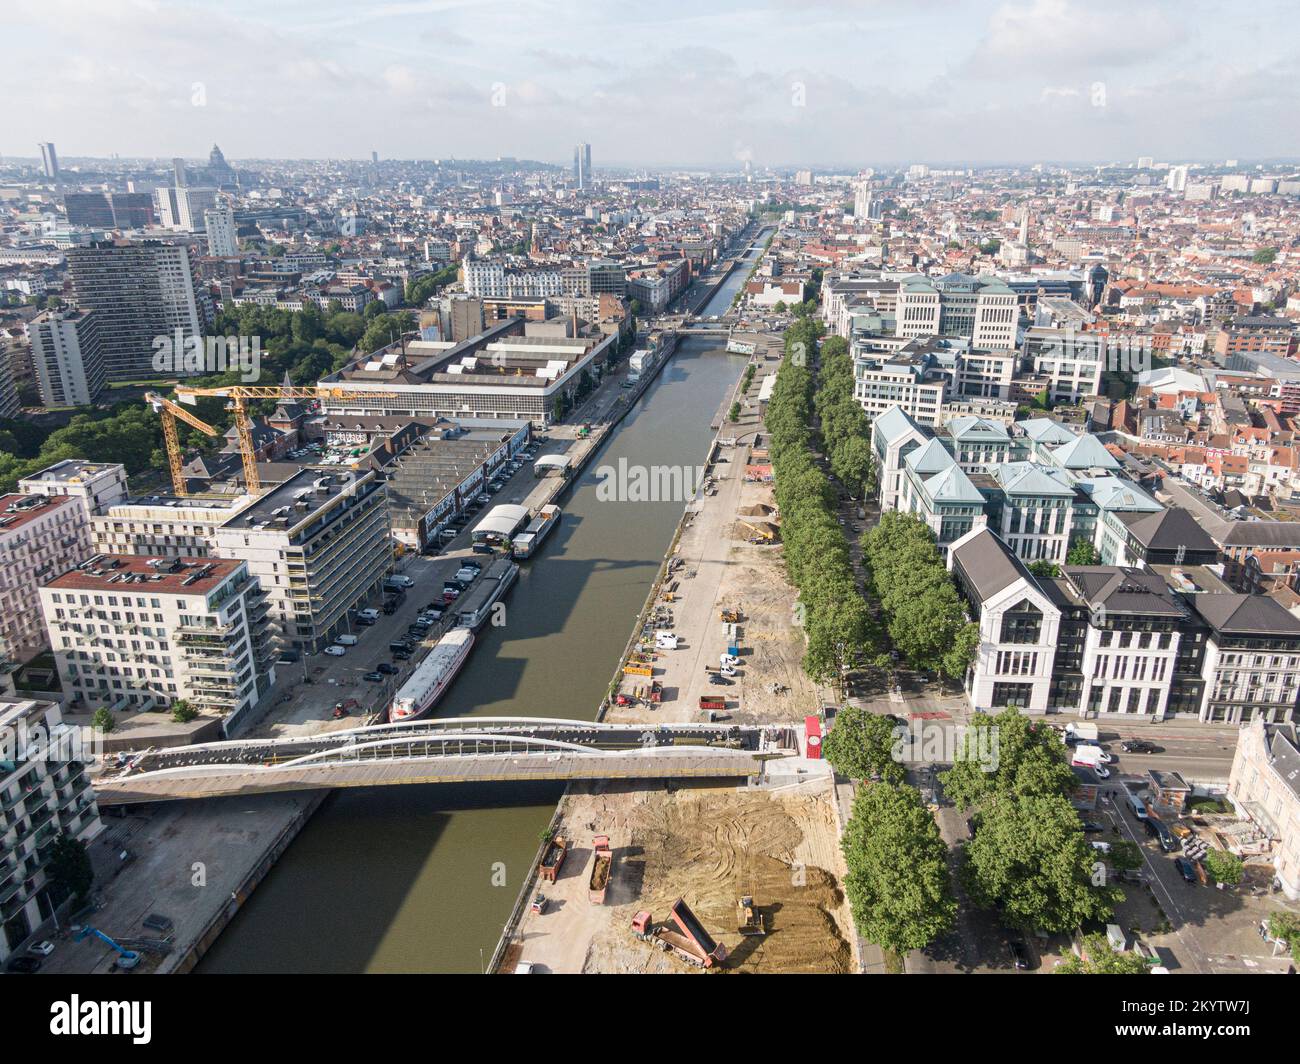 Bruxelles, Belgio - 12 maggio 2022: Paesaggio urbano della città di Bruxelles. Il canale del fiume Senne che attraversa Bruxelles e un ponte per ciclisti e pedine Foto Stock